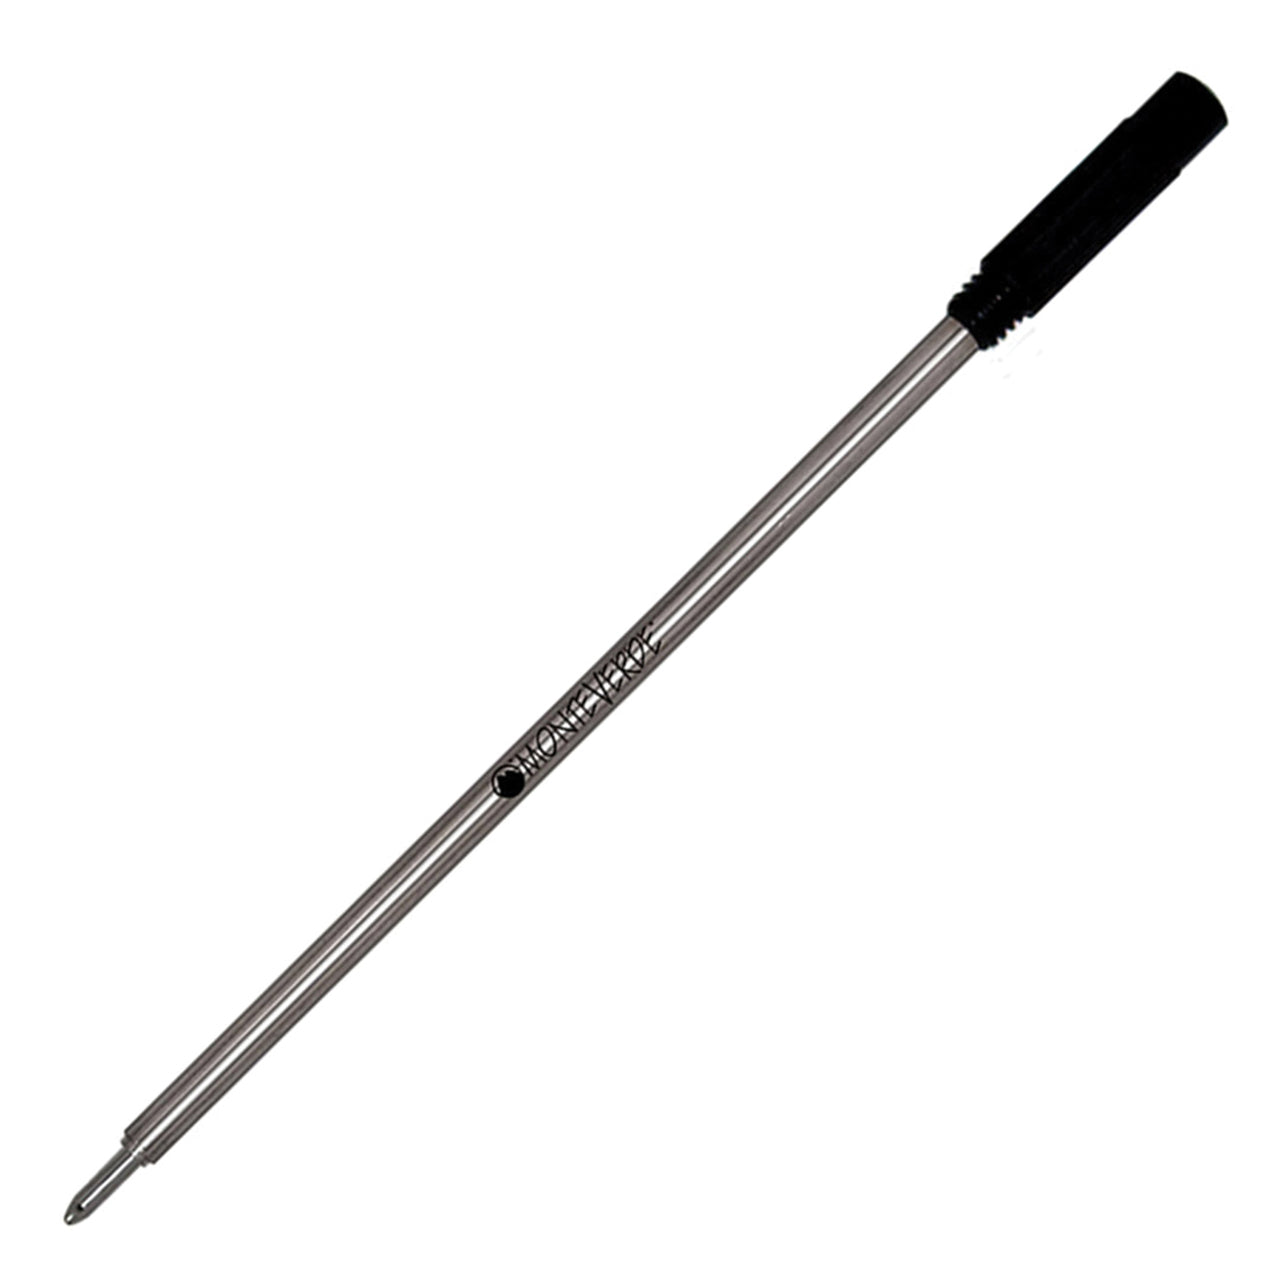 Monteverde Black Ballpoint Pen Refill for Cross